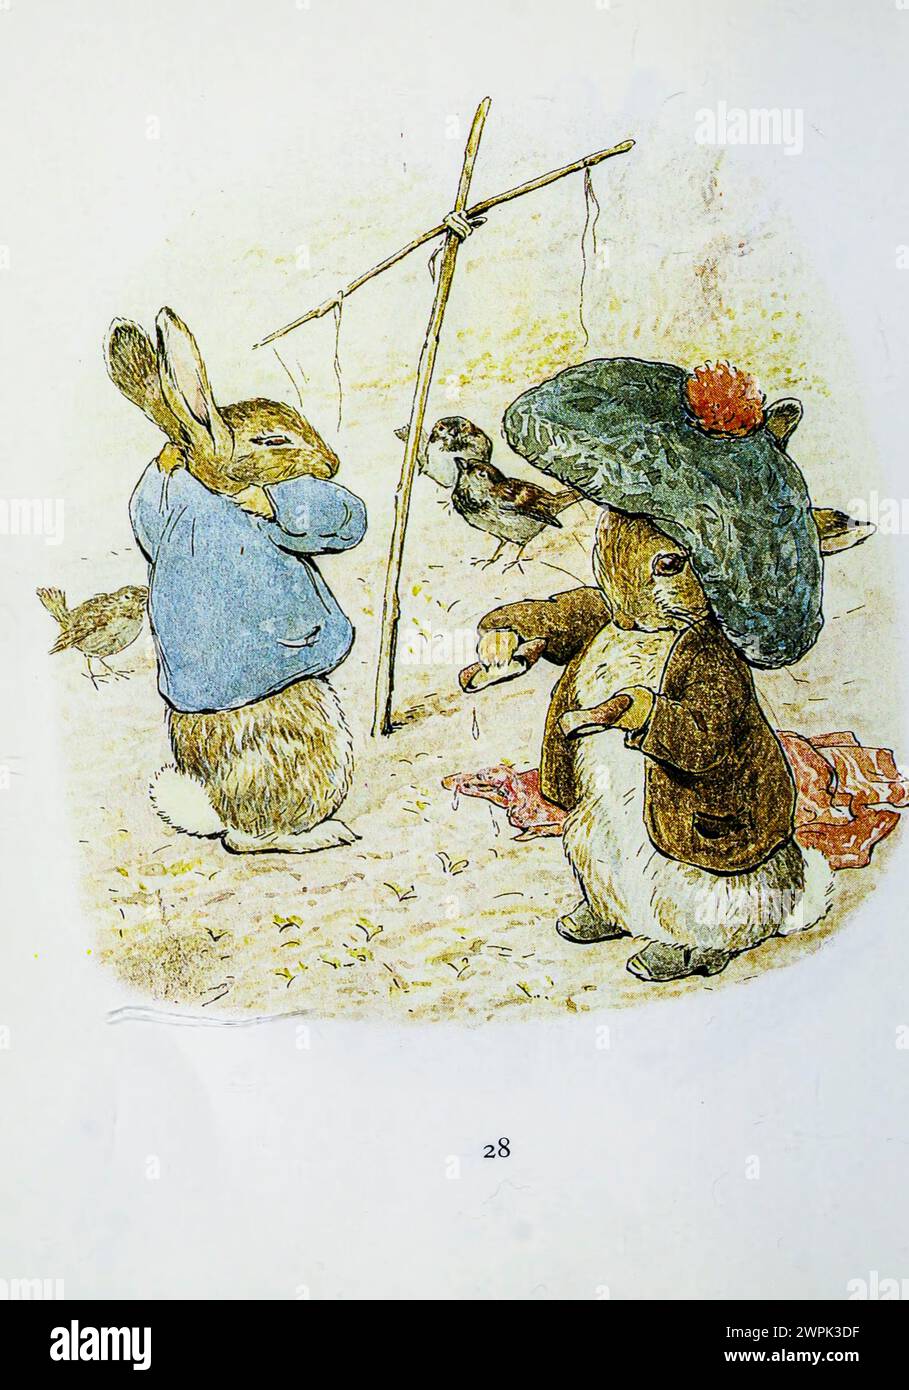 The Tale of Benjamin Bunny ist ein Kinderbuch von Beatrix Potter, das erstmals im September 1904 von Frederick warne & Co. Veröffentlicht wurde. Das Buch ist eine Fortsetzung der Geschichte von Peter Rabbit (1902) und erzählt von Peters Rückkehr in Mr. McGregors Garten mit seinem Cousin Benjamin, um die Kleidung zu holen, die er dort während seines vorherigen Abenteuers verloren hat. Stockfoto